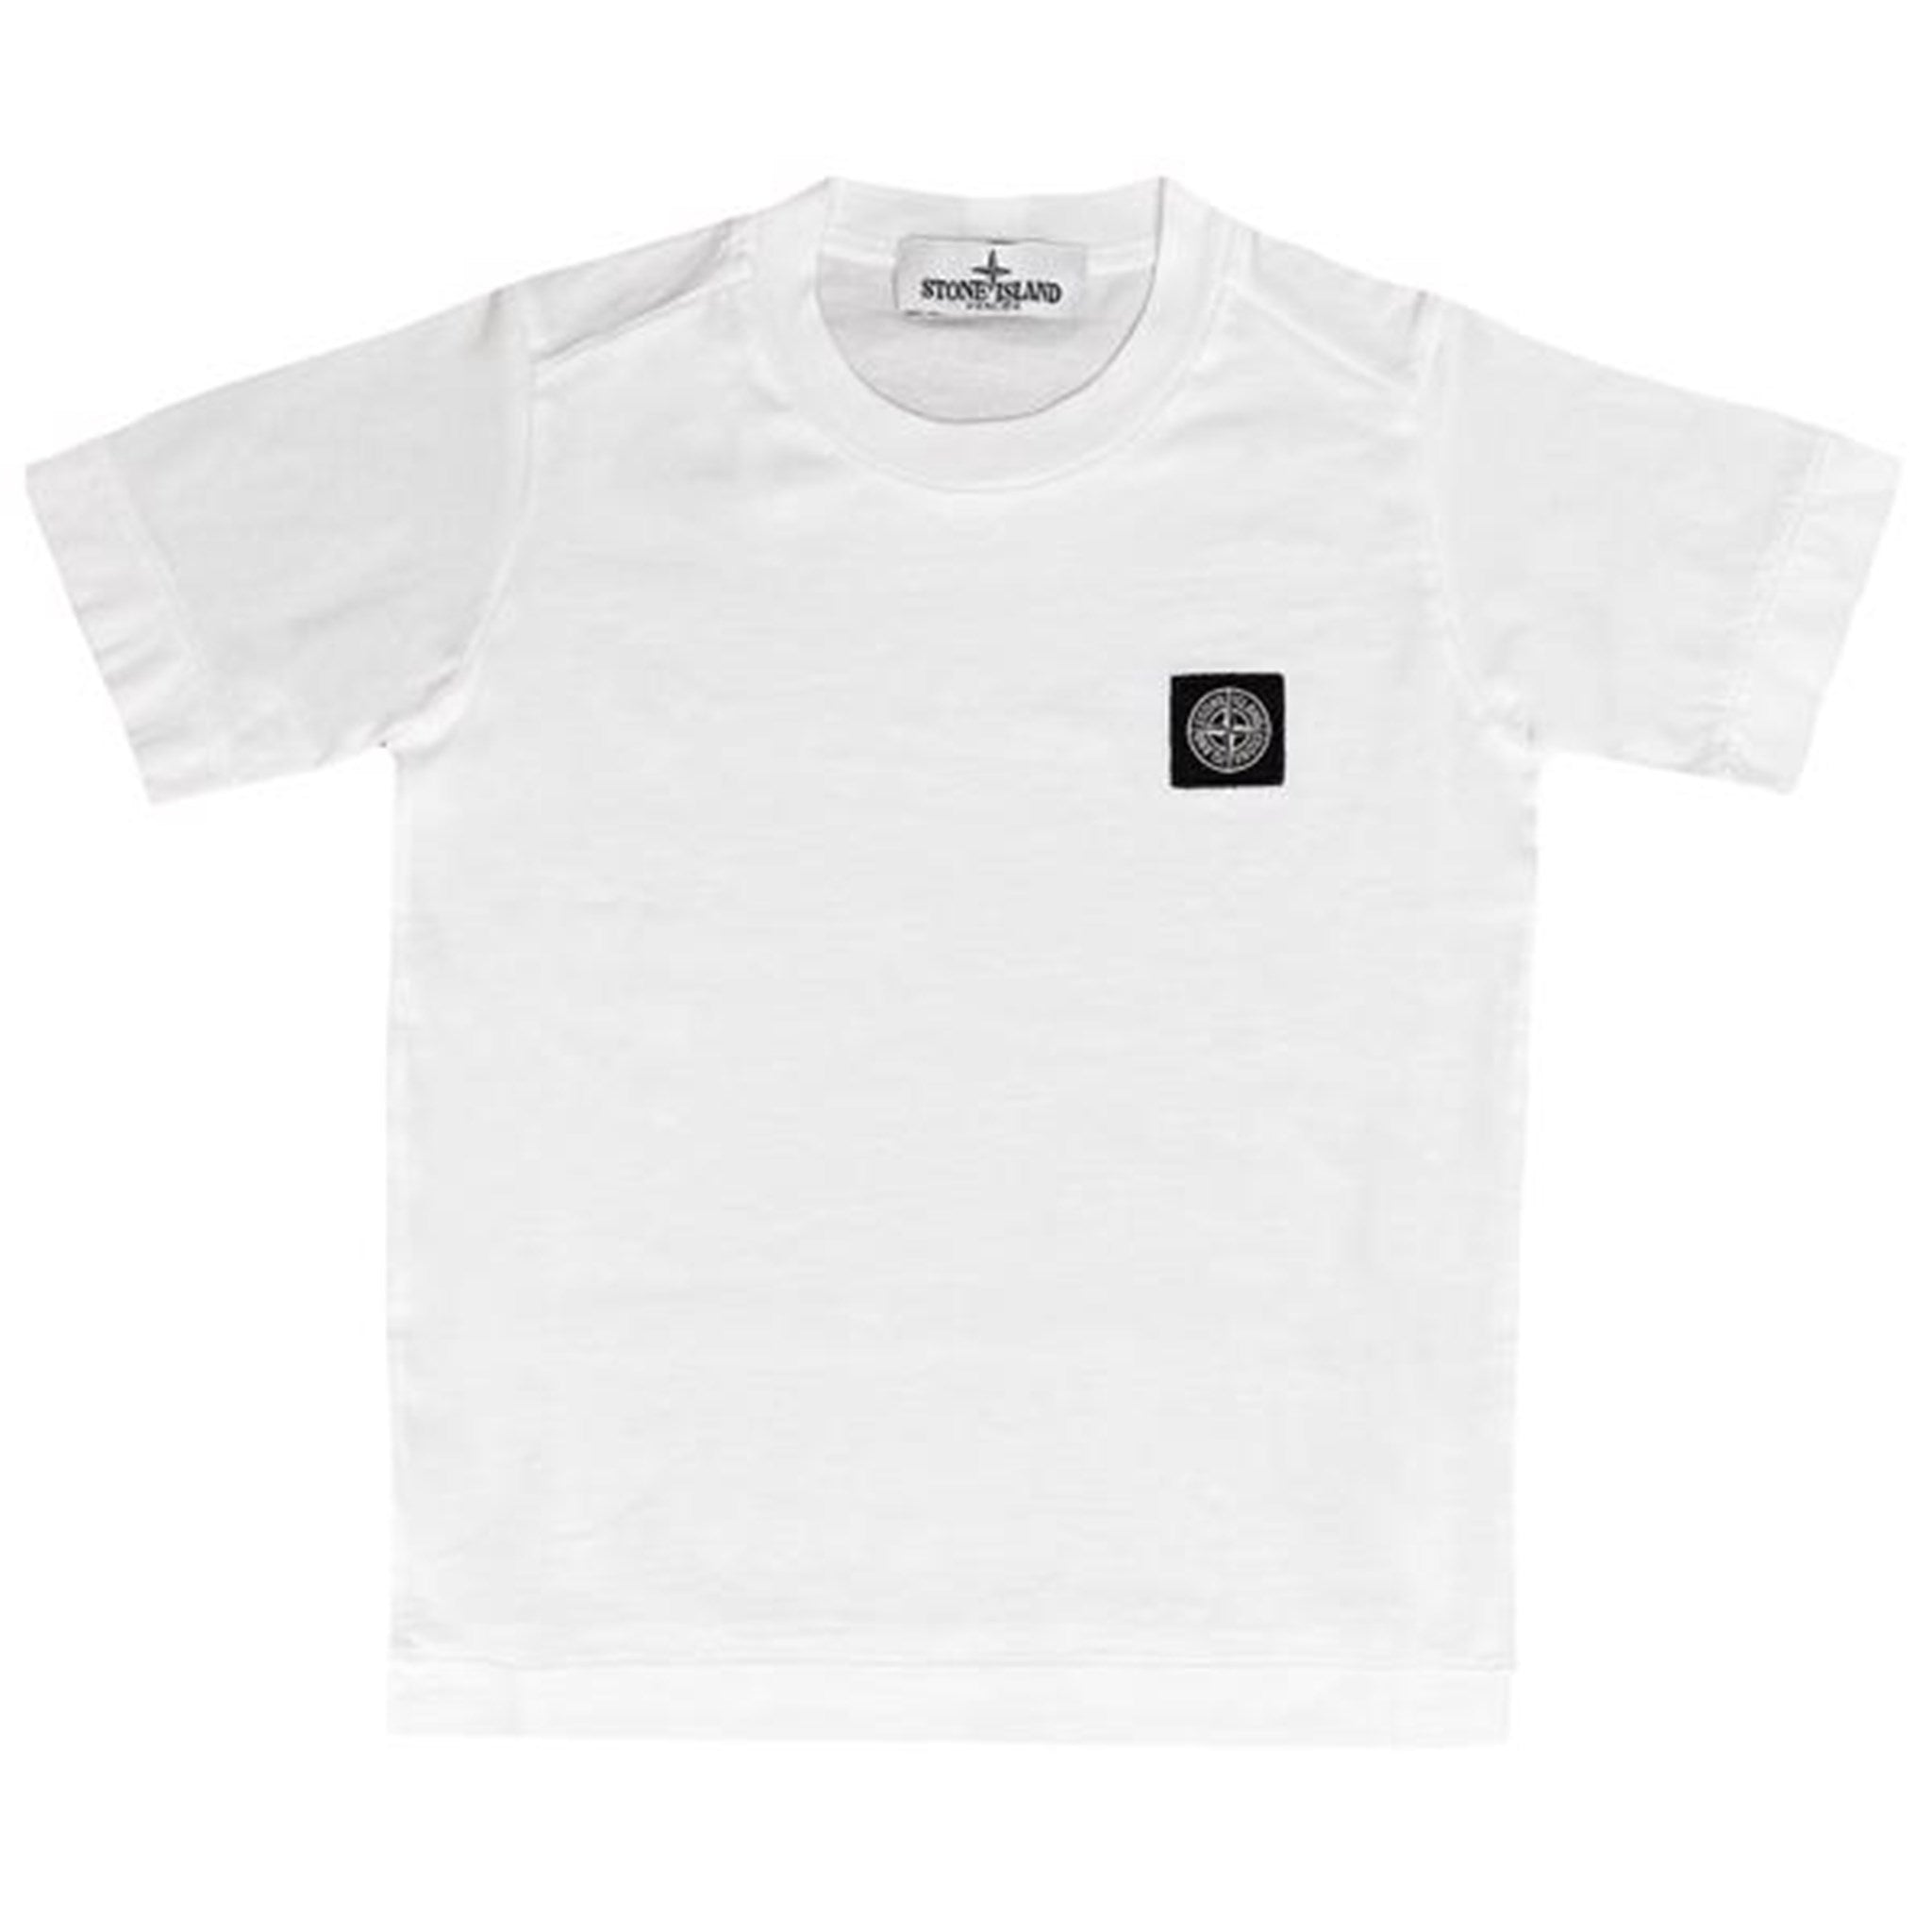 Stone Island Junior T-shirt White